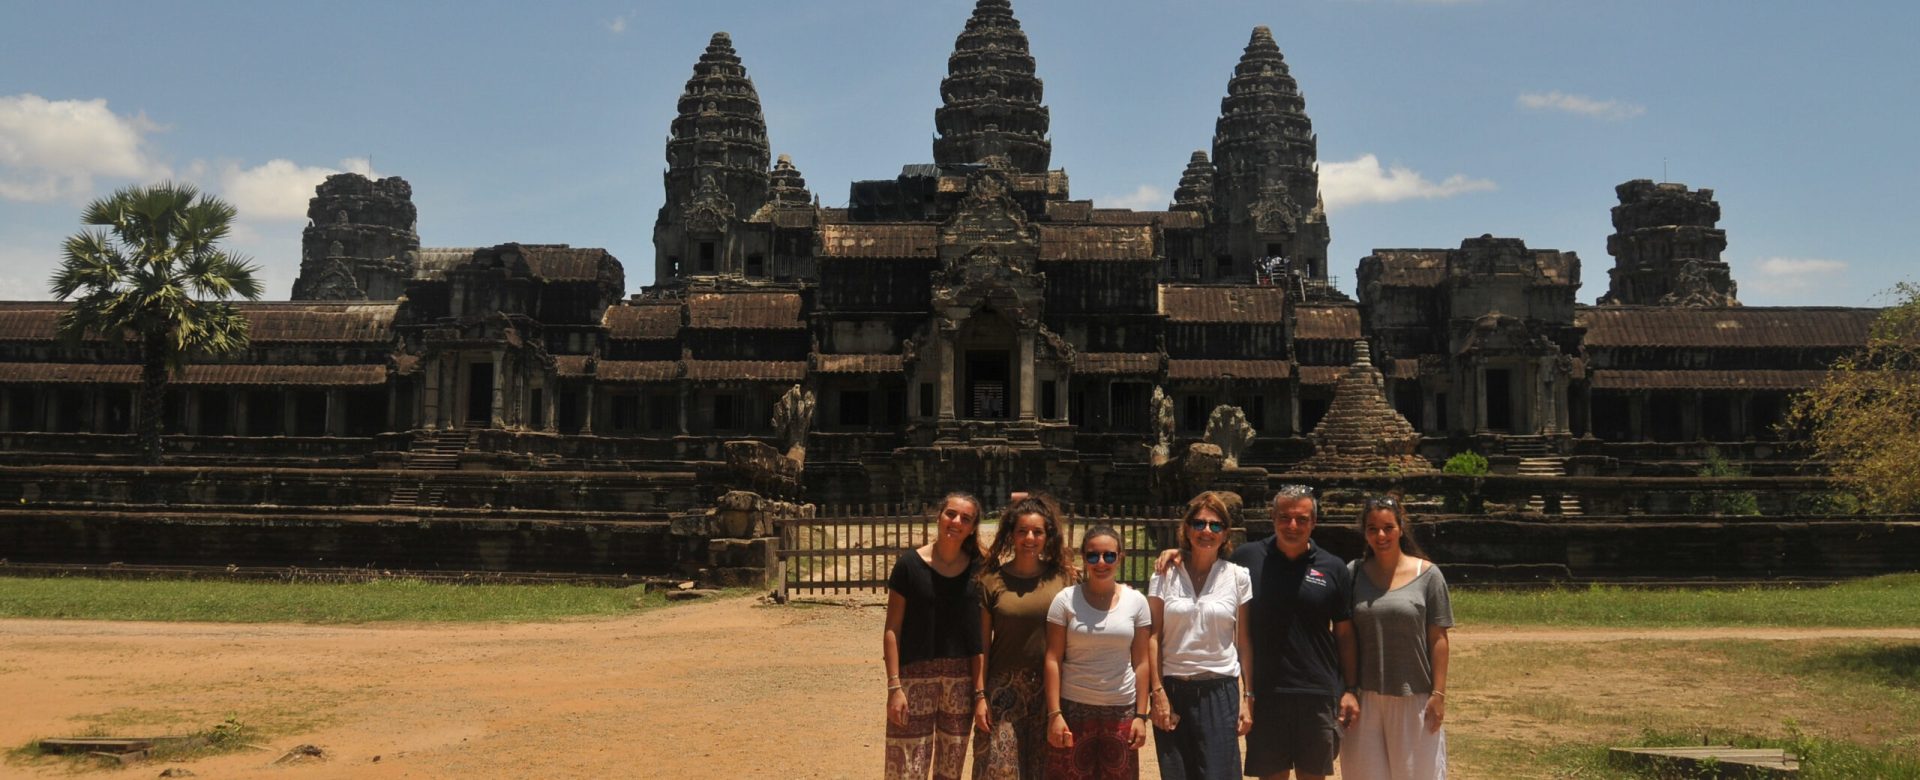 2016-06 Angkor Wat 2016-06-11 07-51 045